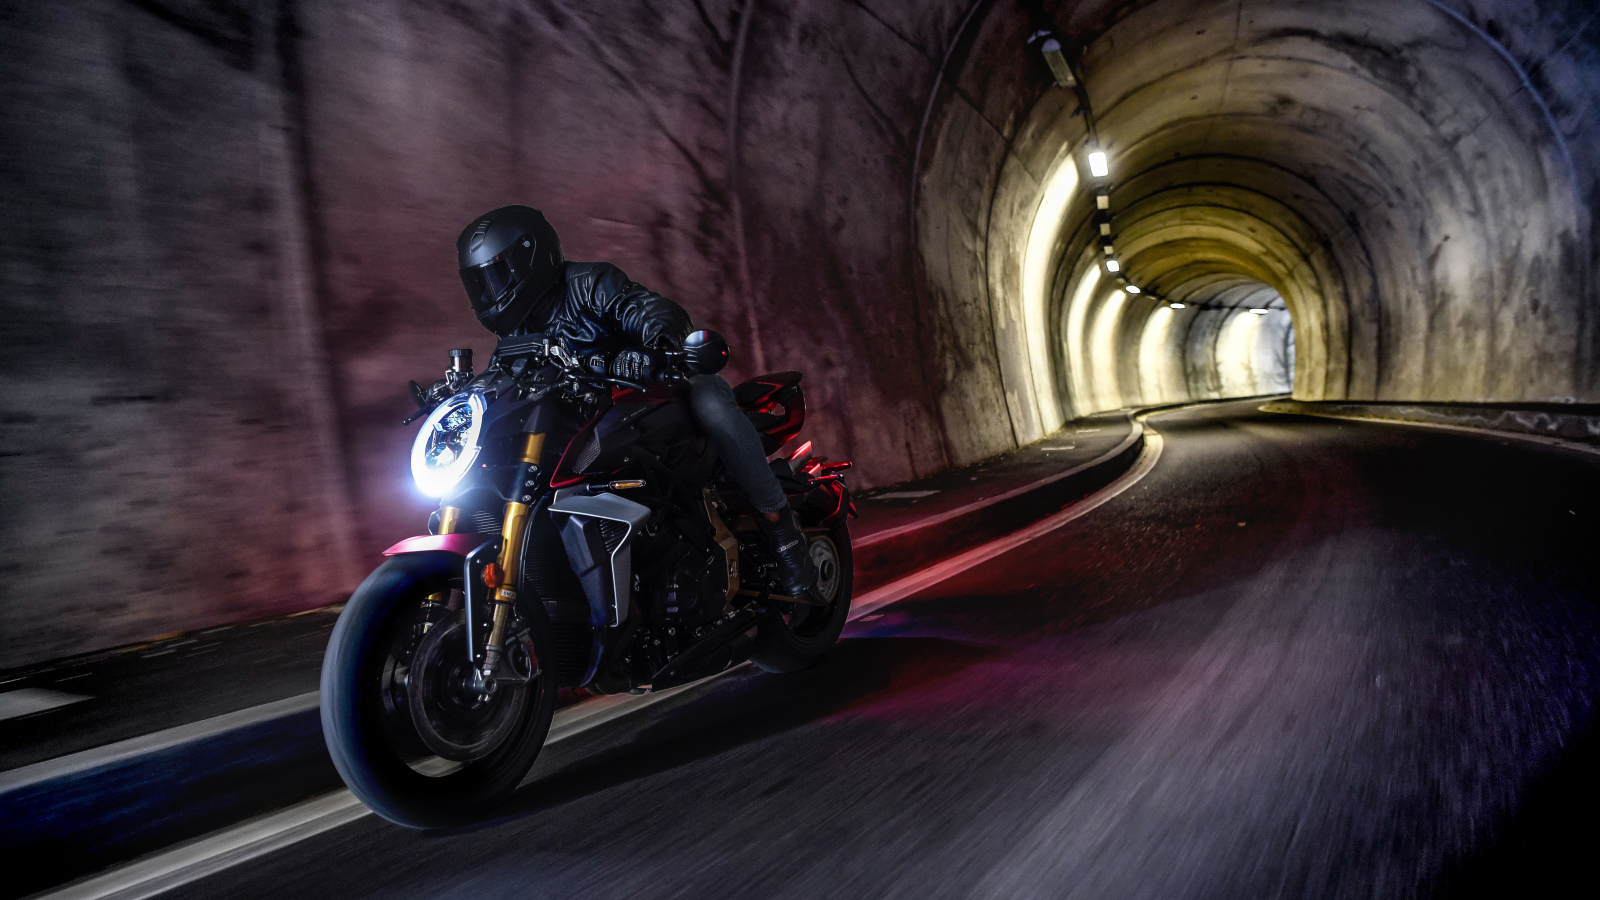 Мотоциклист на мотоцикле MV Agusta Brutale 1000 Serie Oro 2019 года в тоннеле